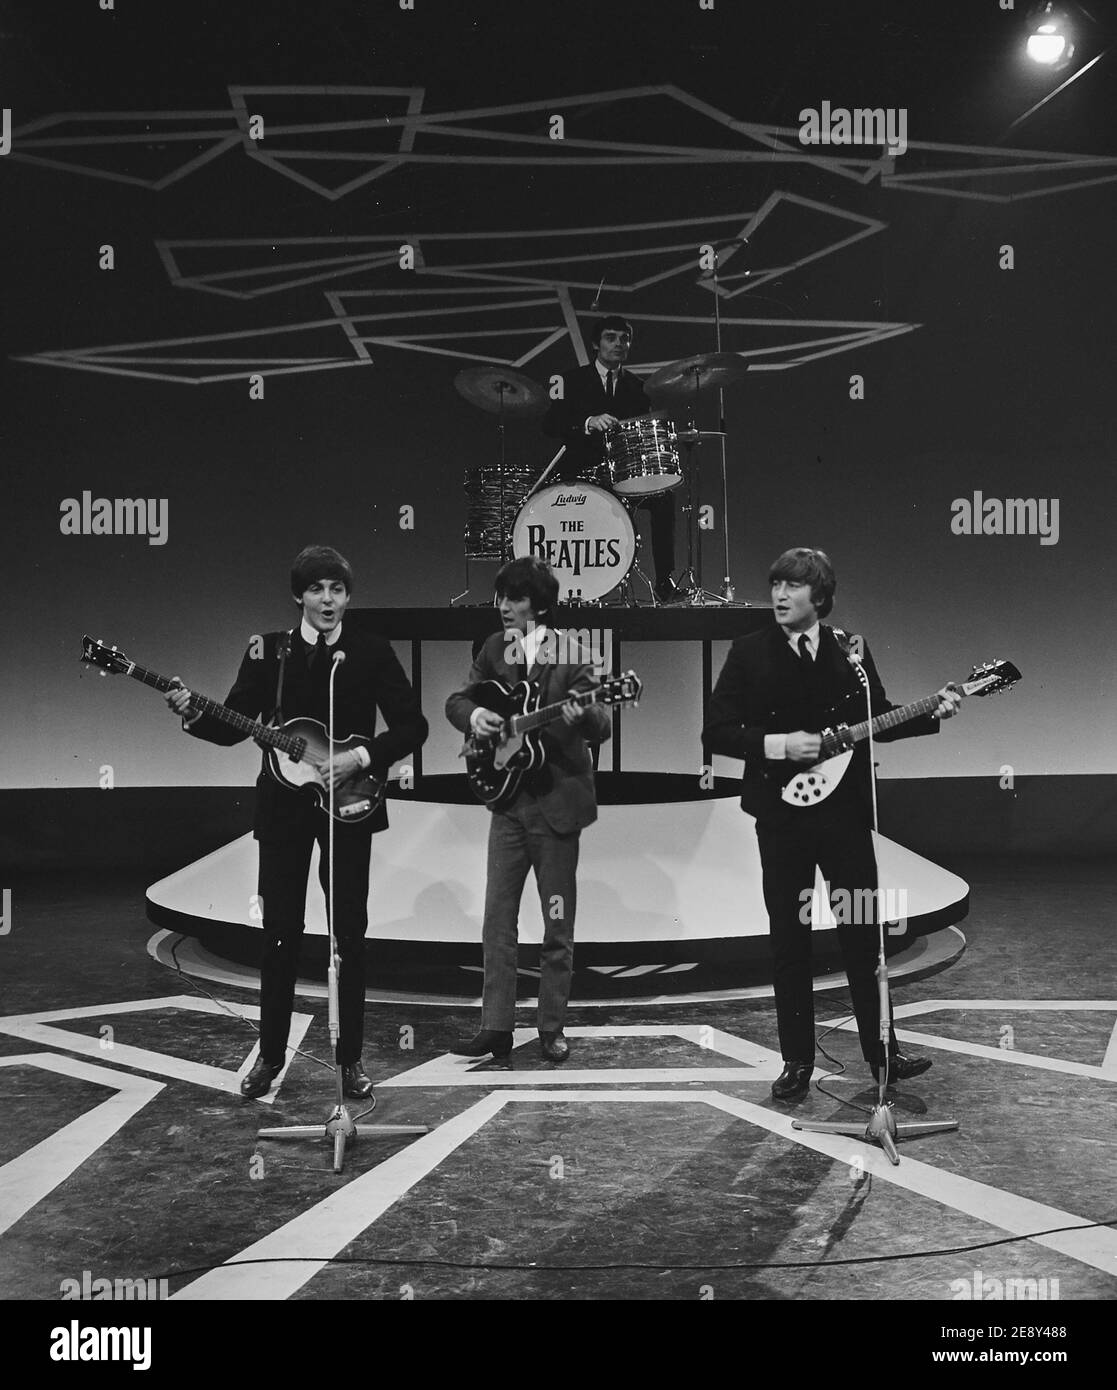 Télévision en Hollande / pays-Bas (les Beatles sans Ringo Starr qui était malade en ce moment, remplacé par Jimmy Nicol) Banque D'Images